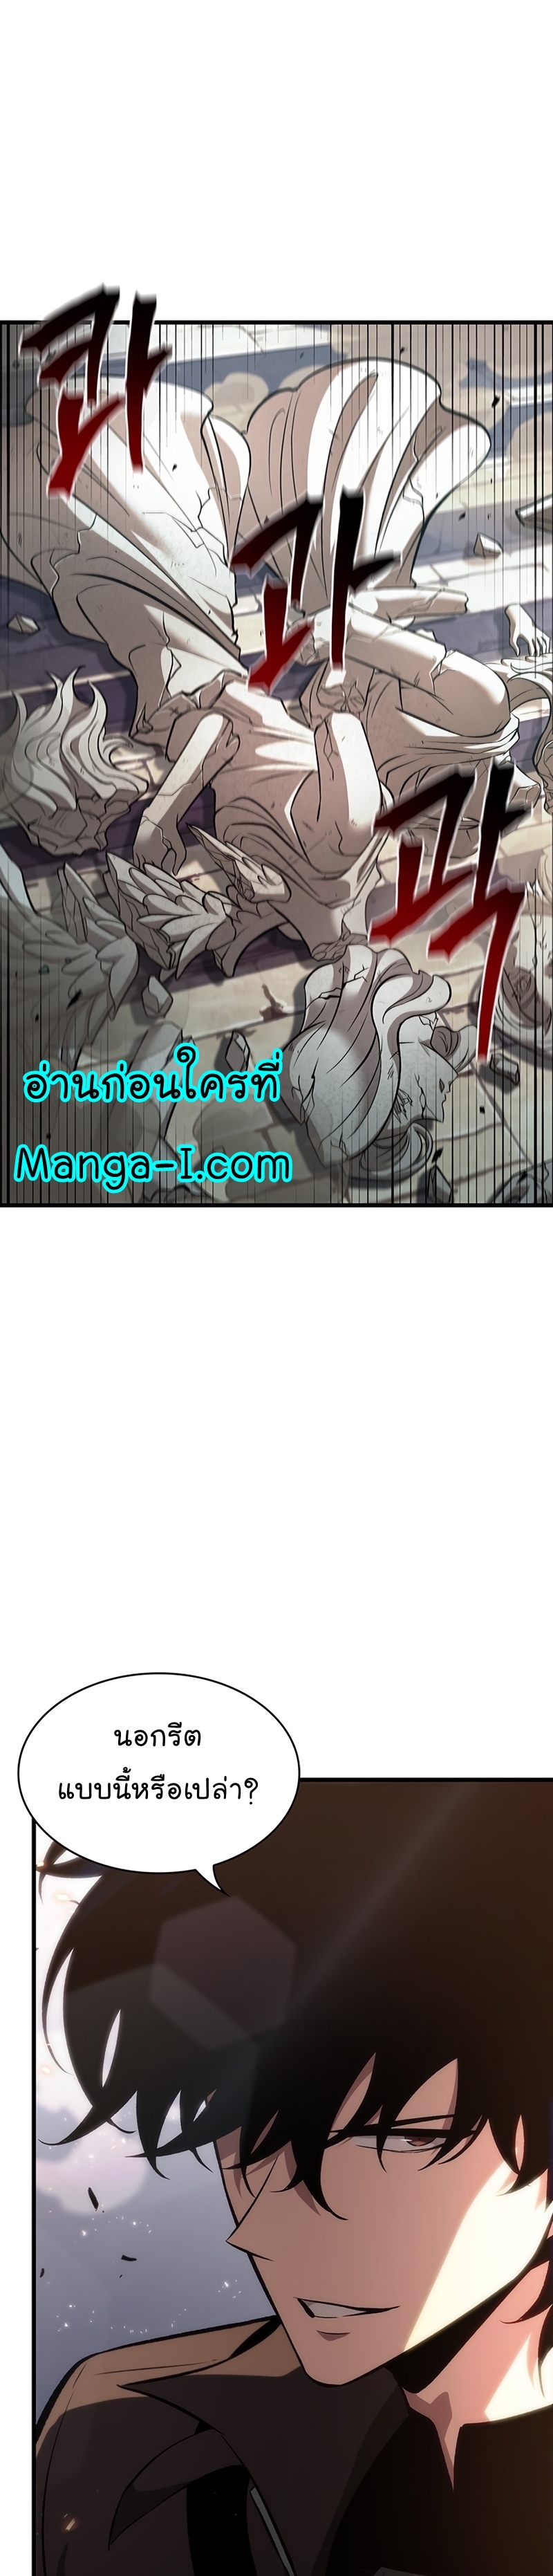 Manga I Manwha Pick Me 47 (27)